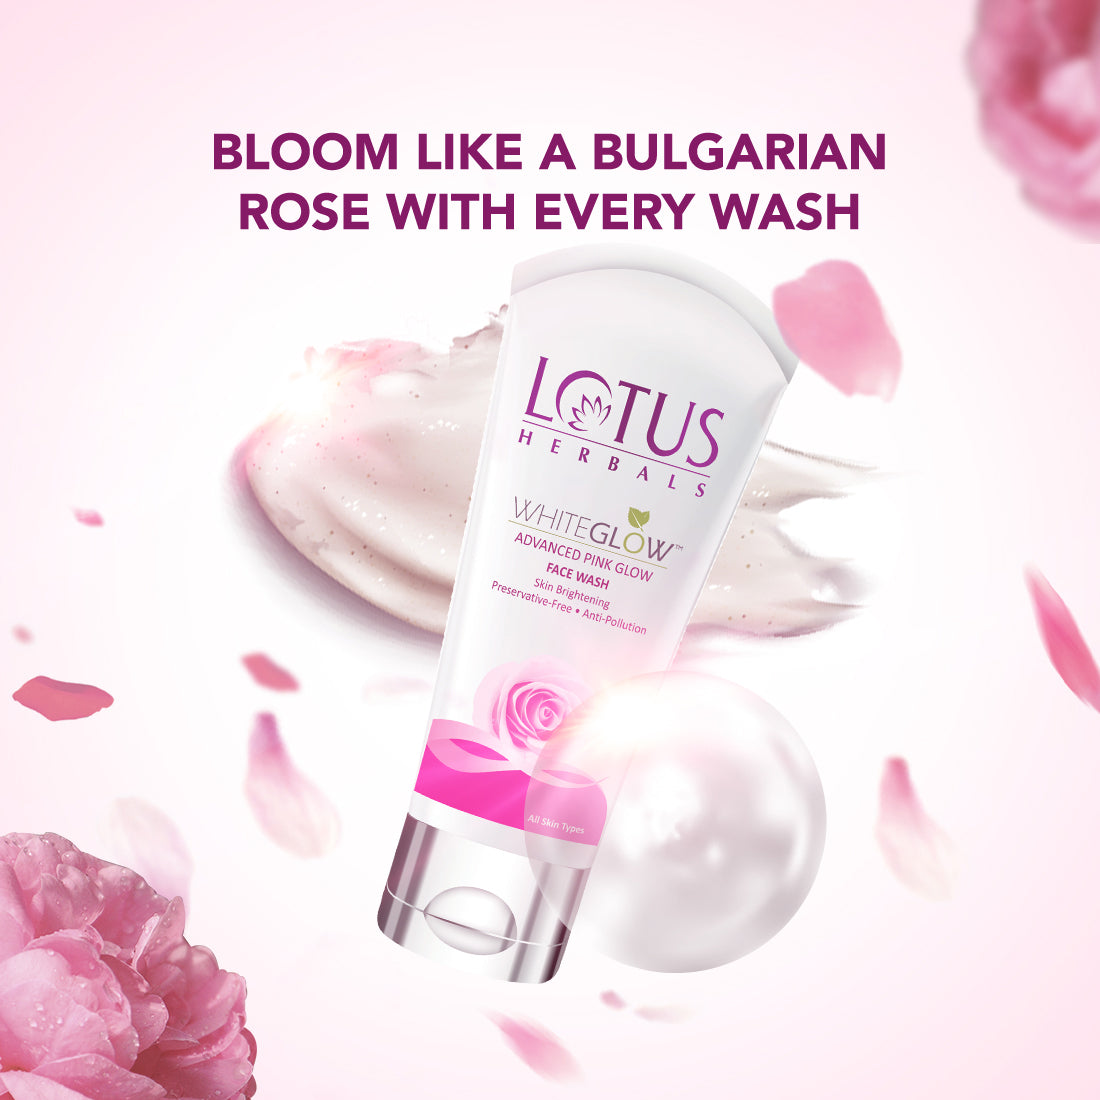 Lotus Herbals Whiteglow Advanced Pink Glow Face Wash (100 gm) Lotus Herbals